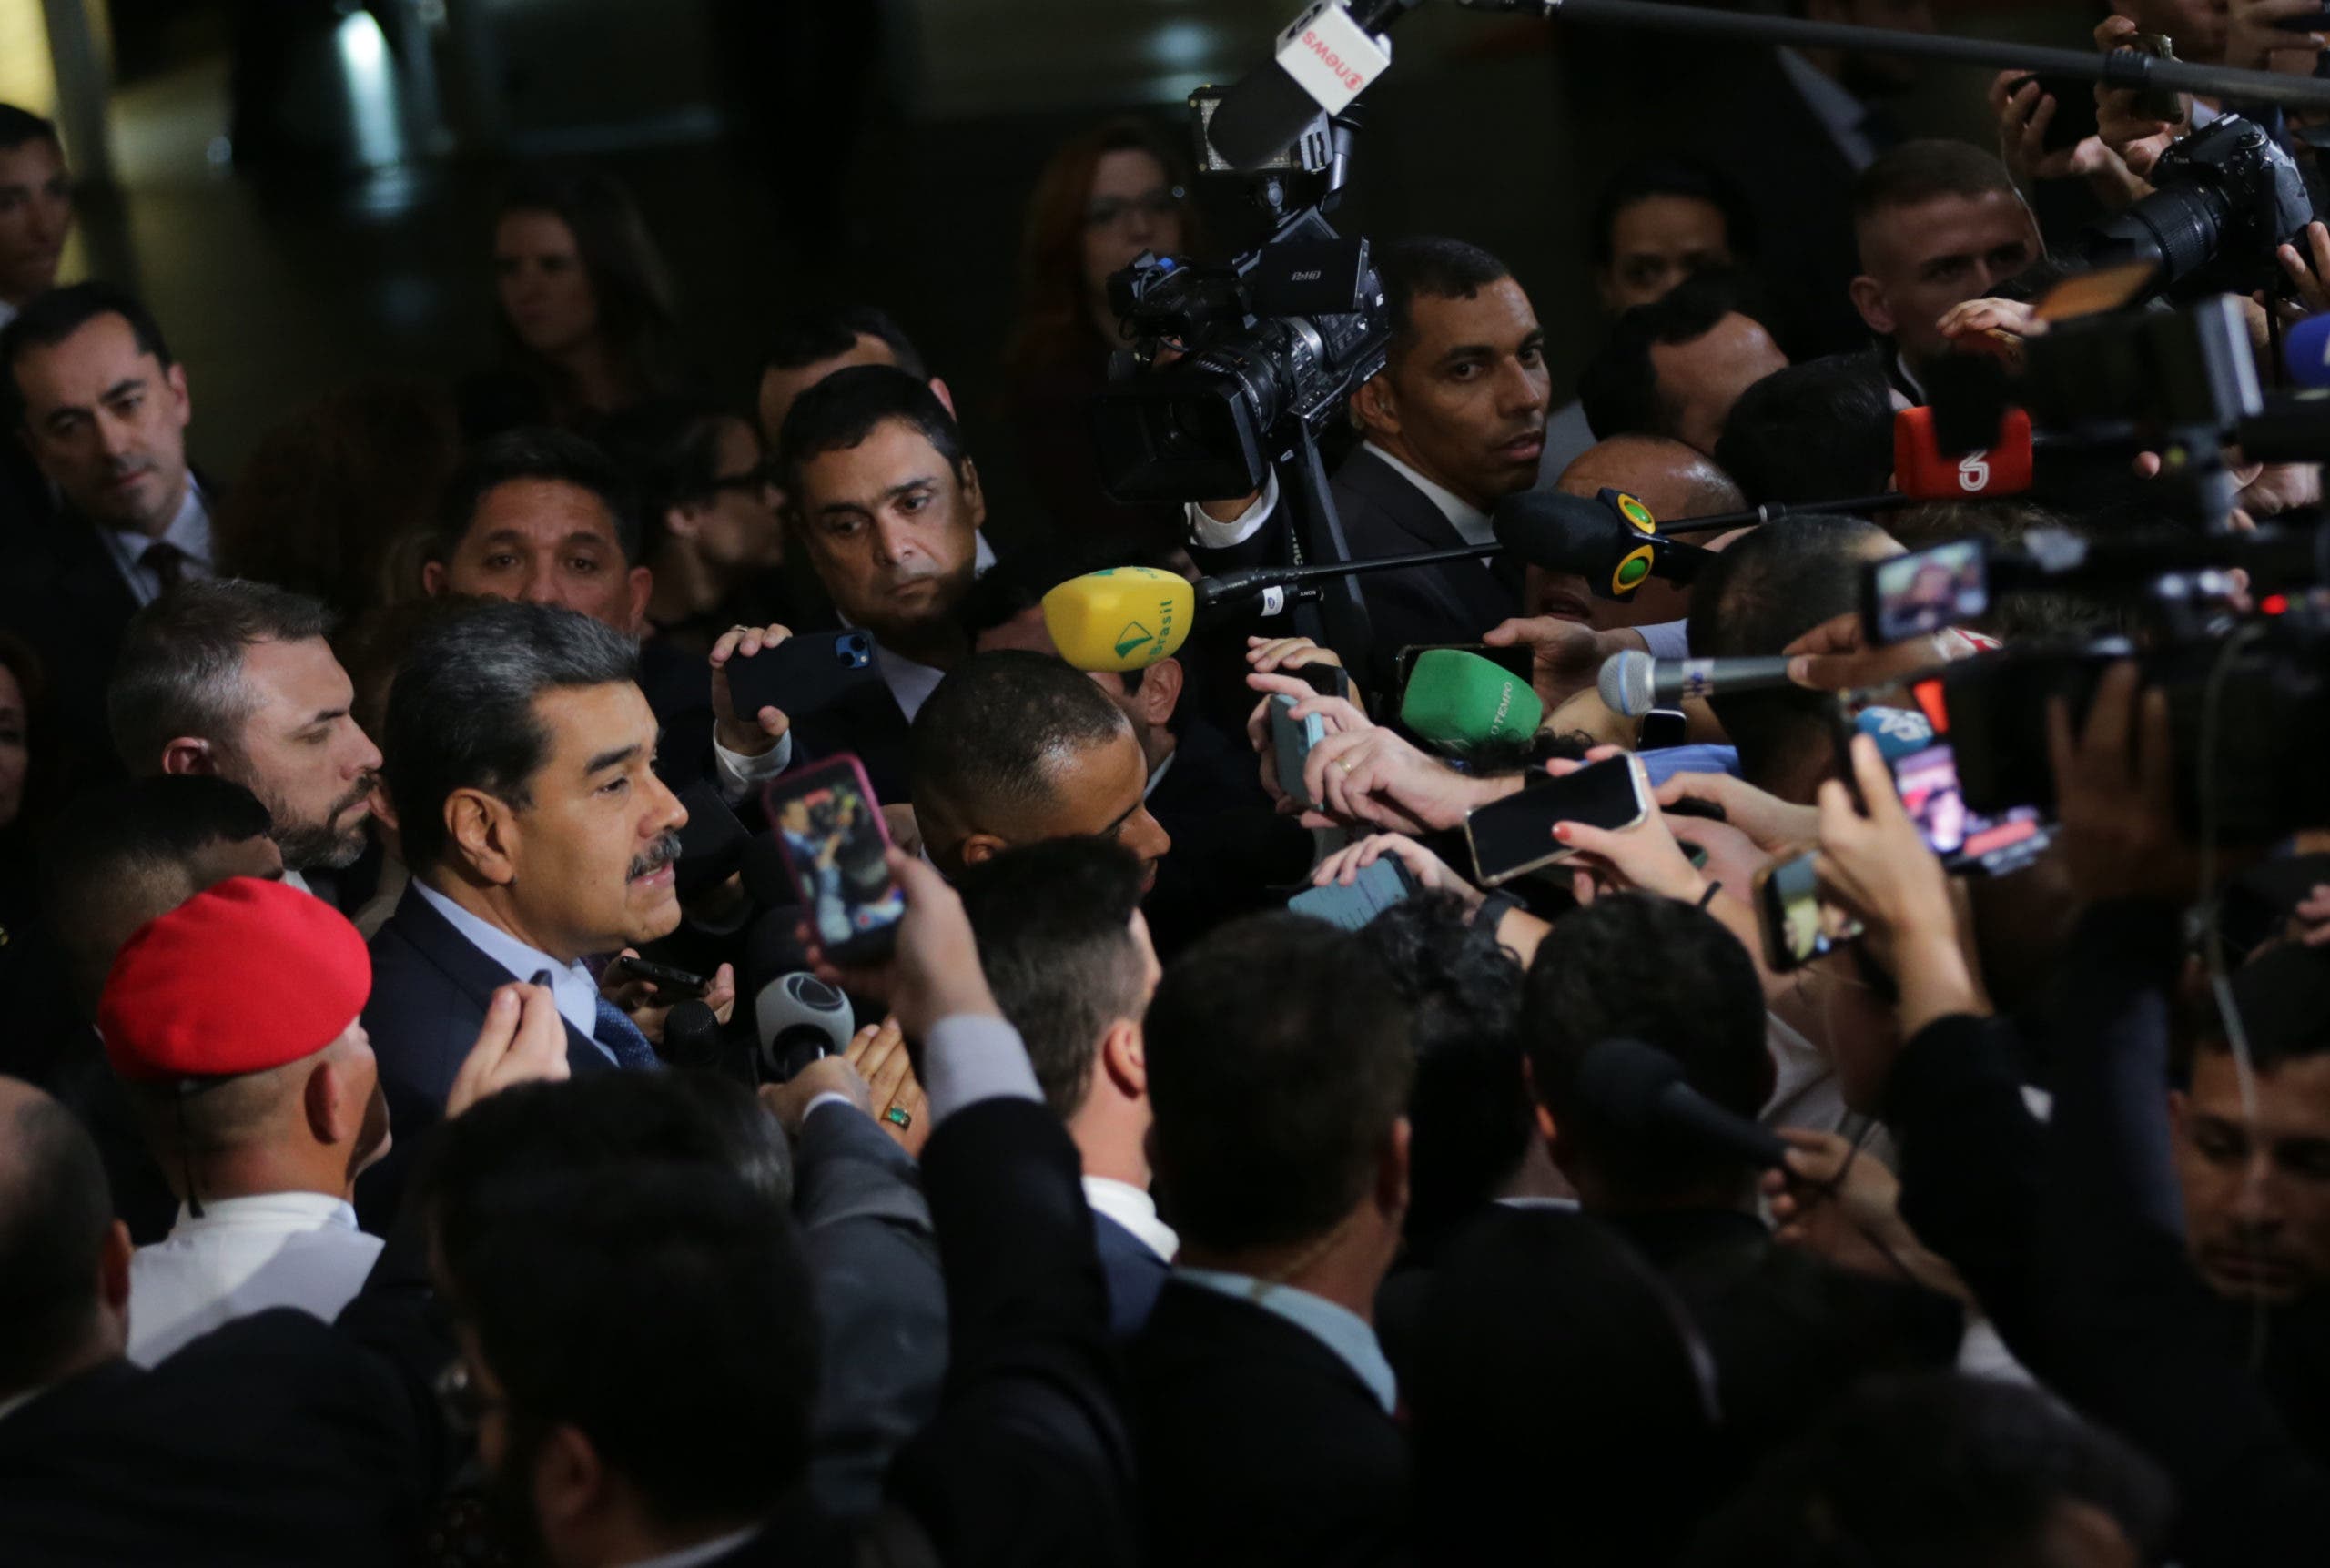 Un tumulto de periodistas y agentes de seguridad marca la salida de Maduro de cumbre